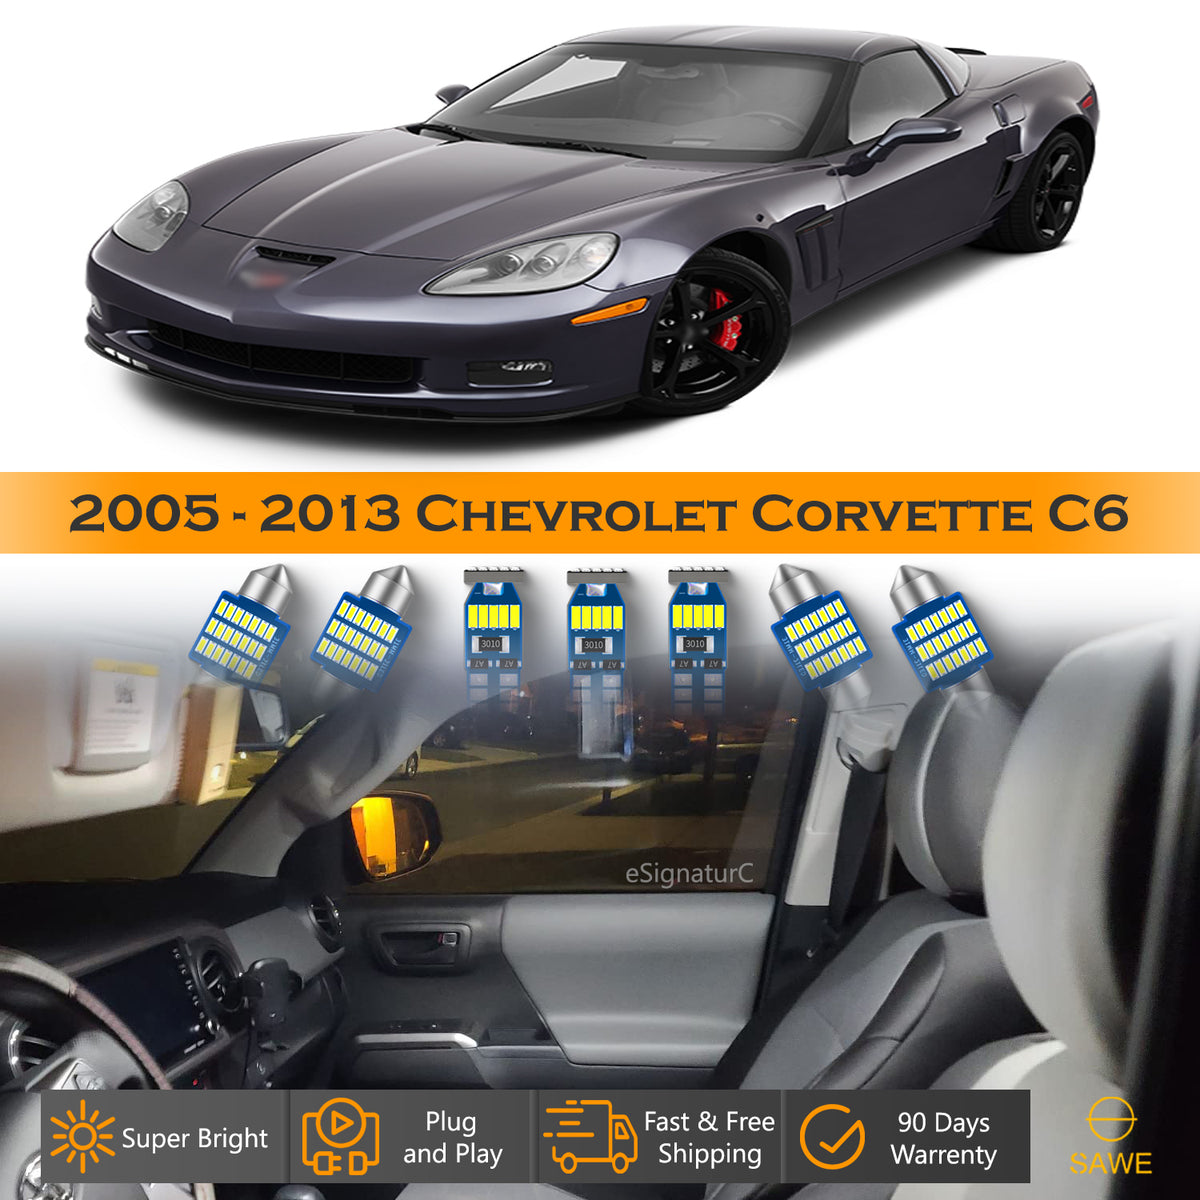 For Chevrolet Corvette C6 Interior LED Lights - Dome & Map Lights Package Kit for 2005 - 2013 - White